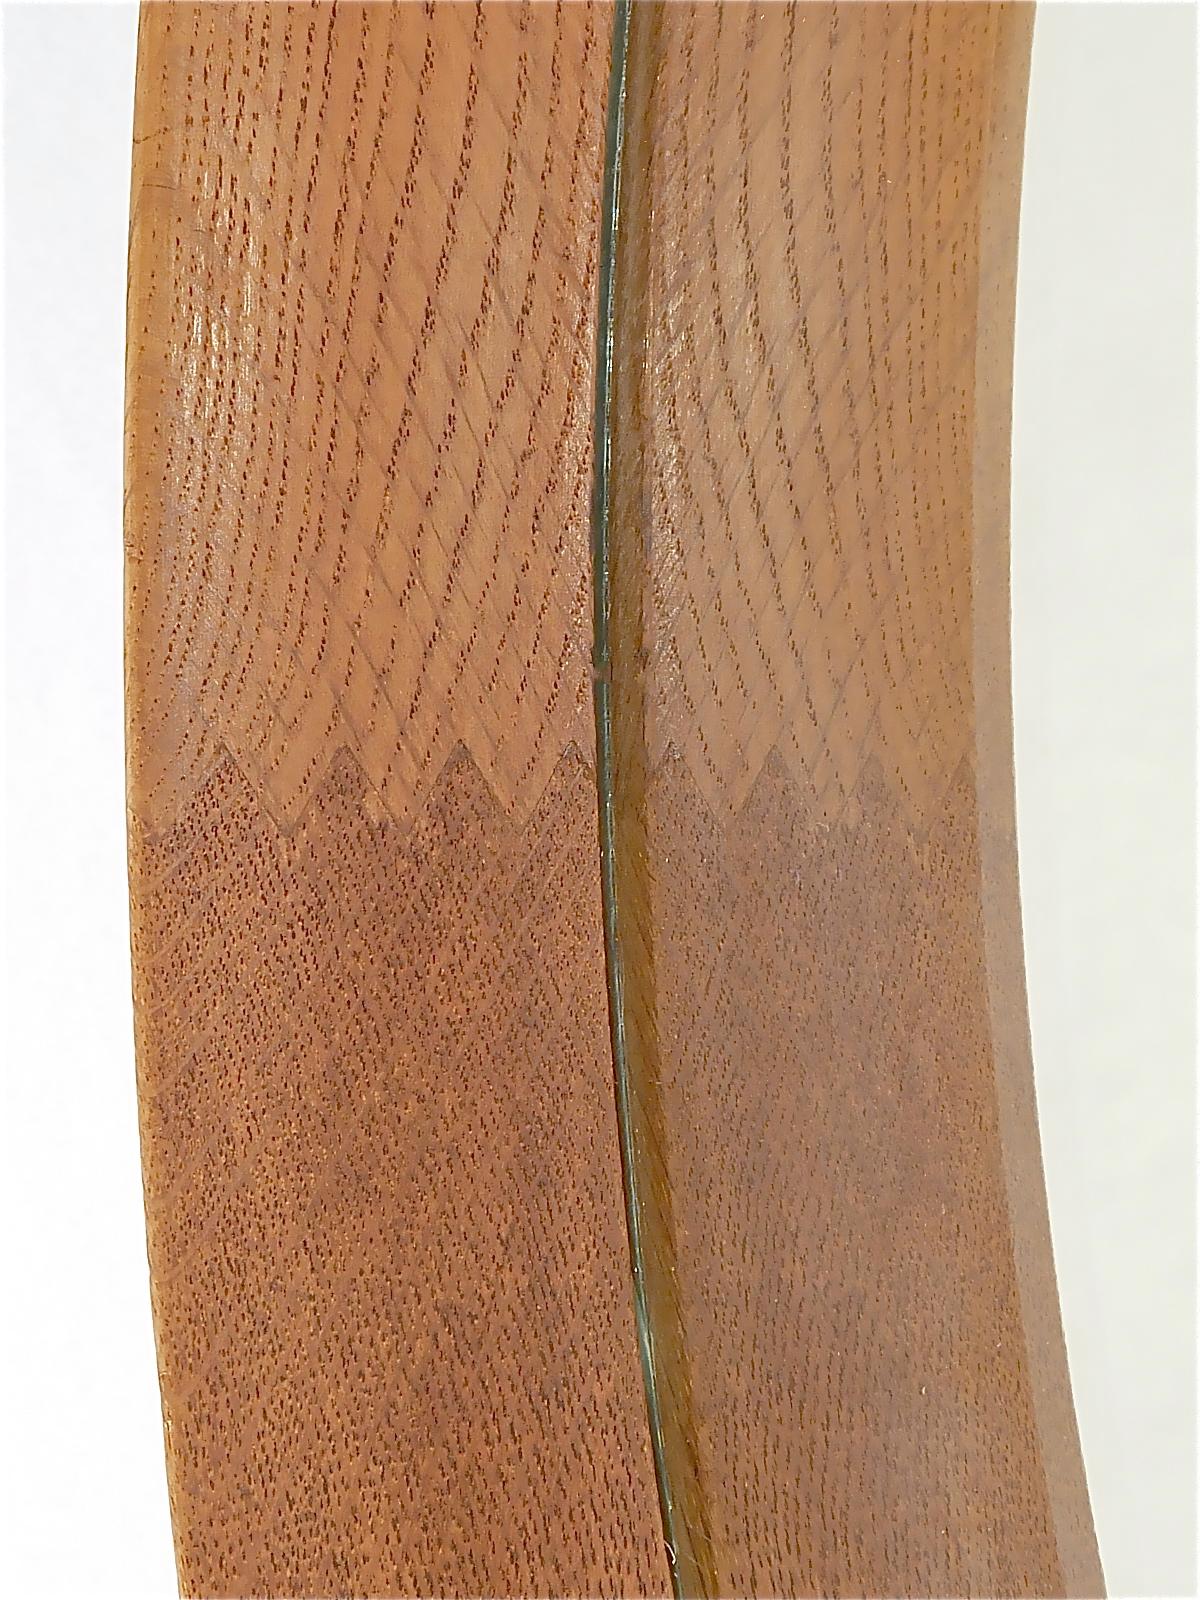 Mid-20th Century Signed Round Wall Mirror Vittsjö Östen Kristiansson Oak Wood Leather, 1960s For Sale